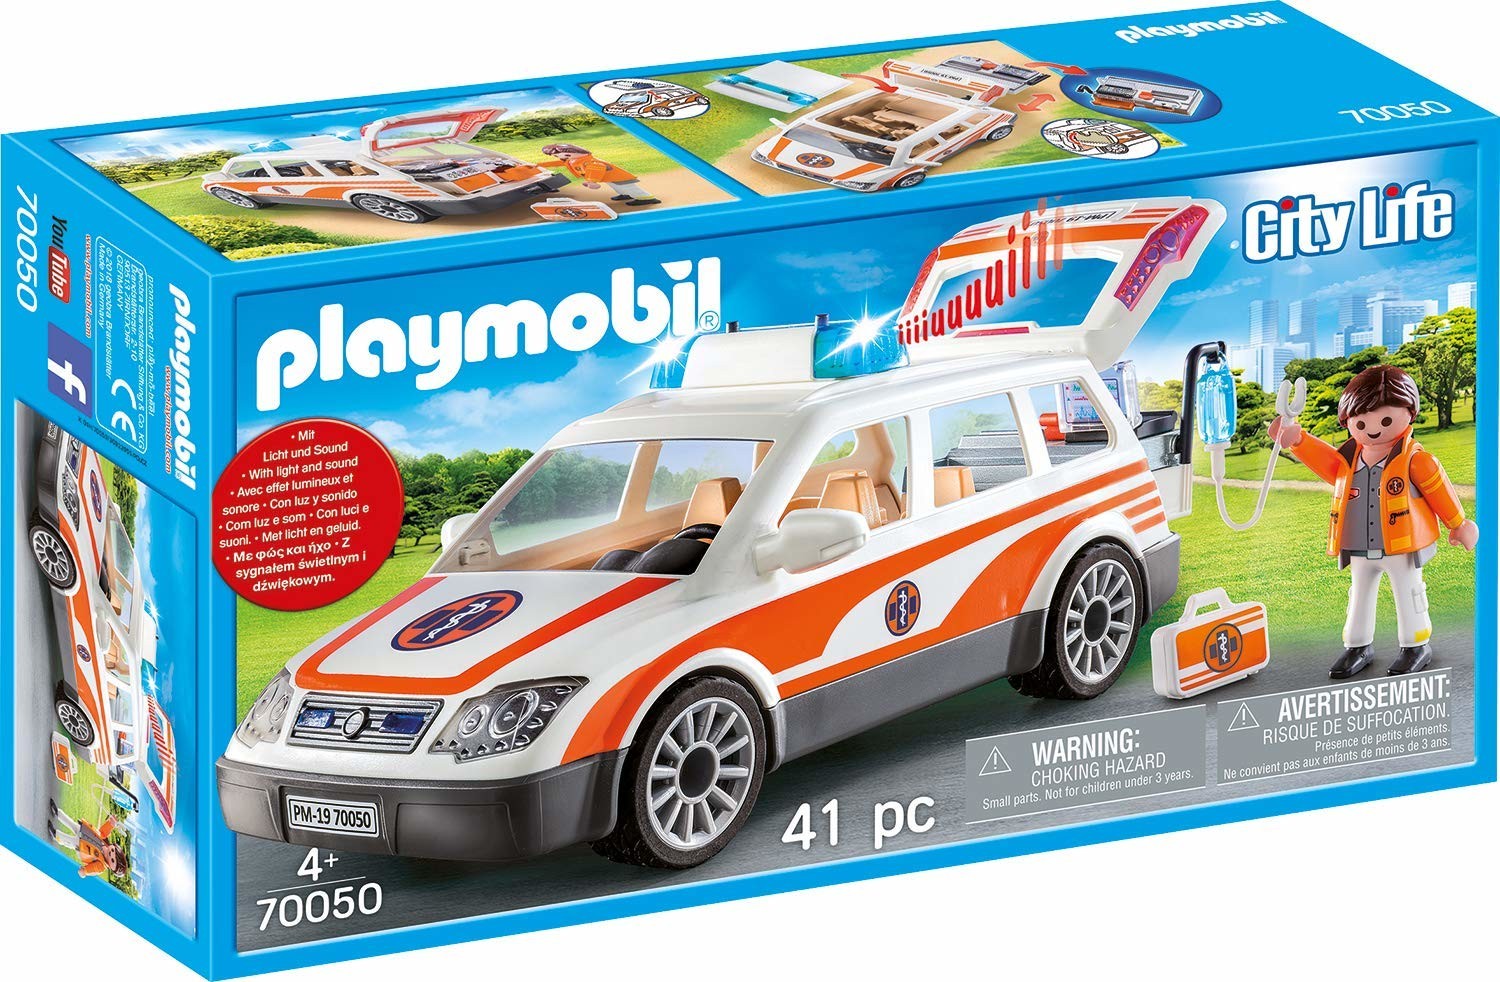 Playmobil City Life 70050 set da gioco